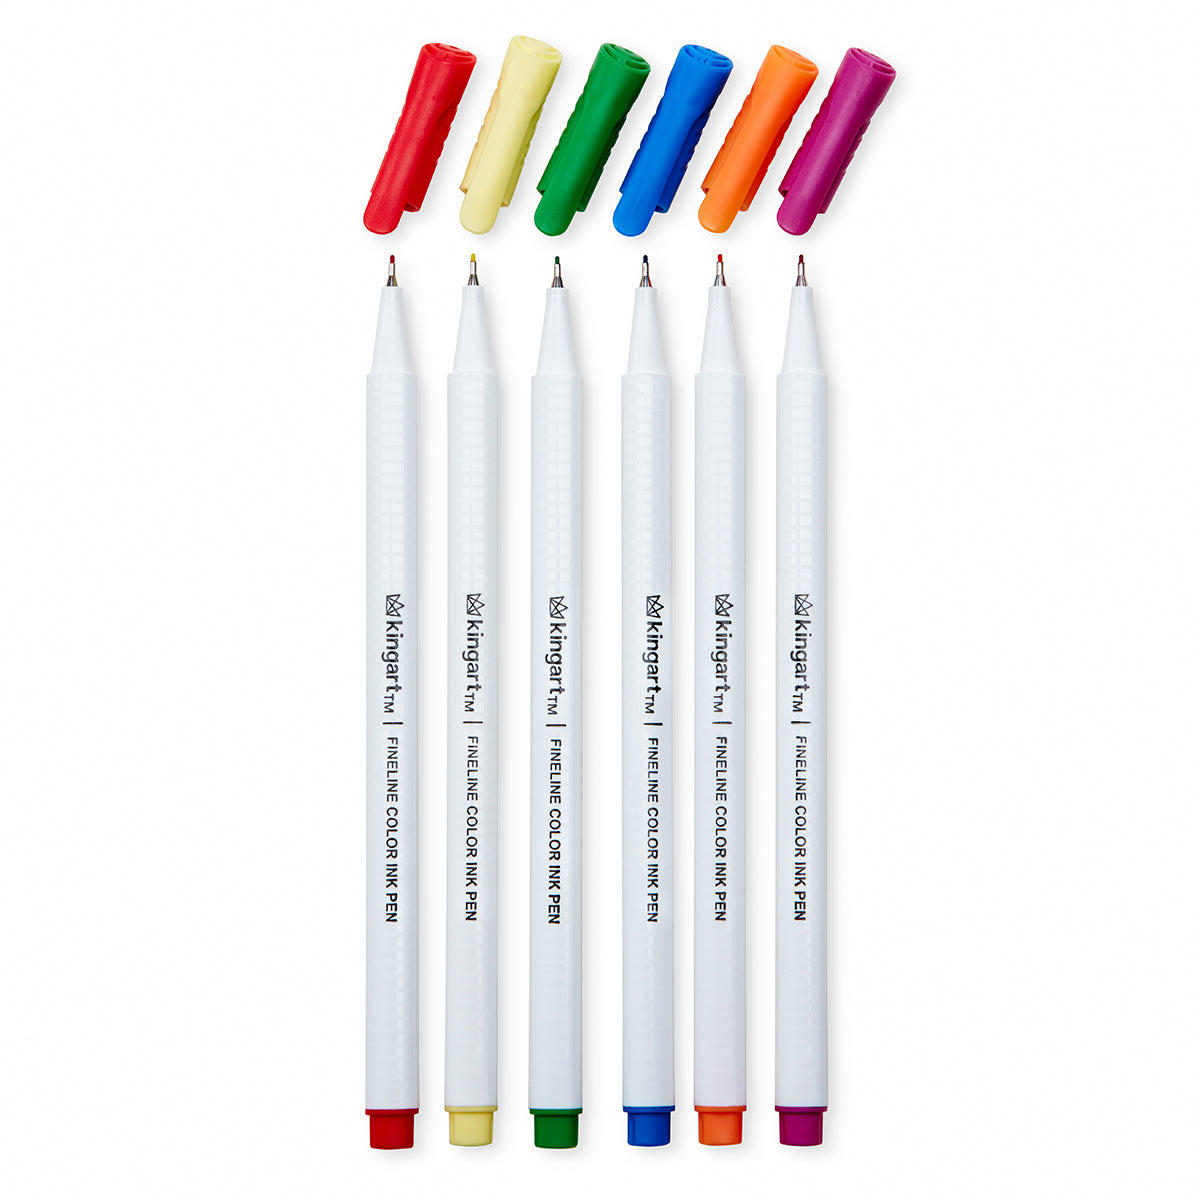 KINGART Fineline Color Ink Pens 48pc